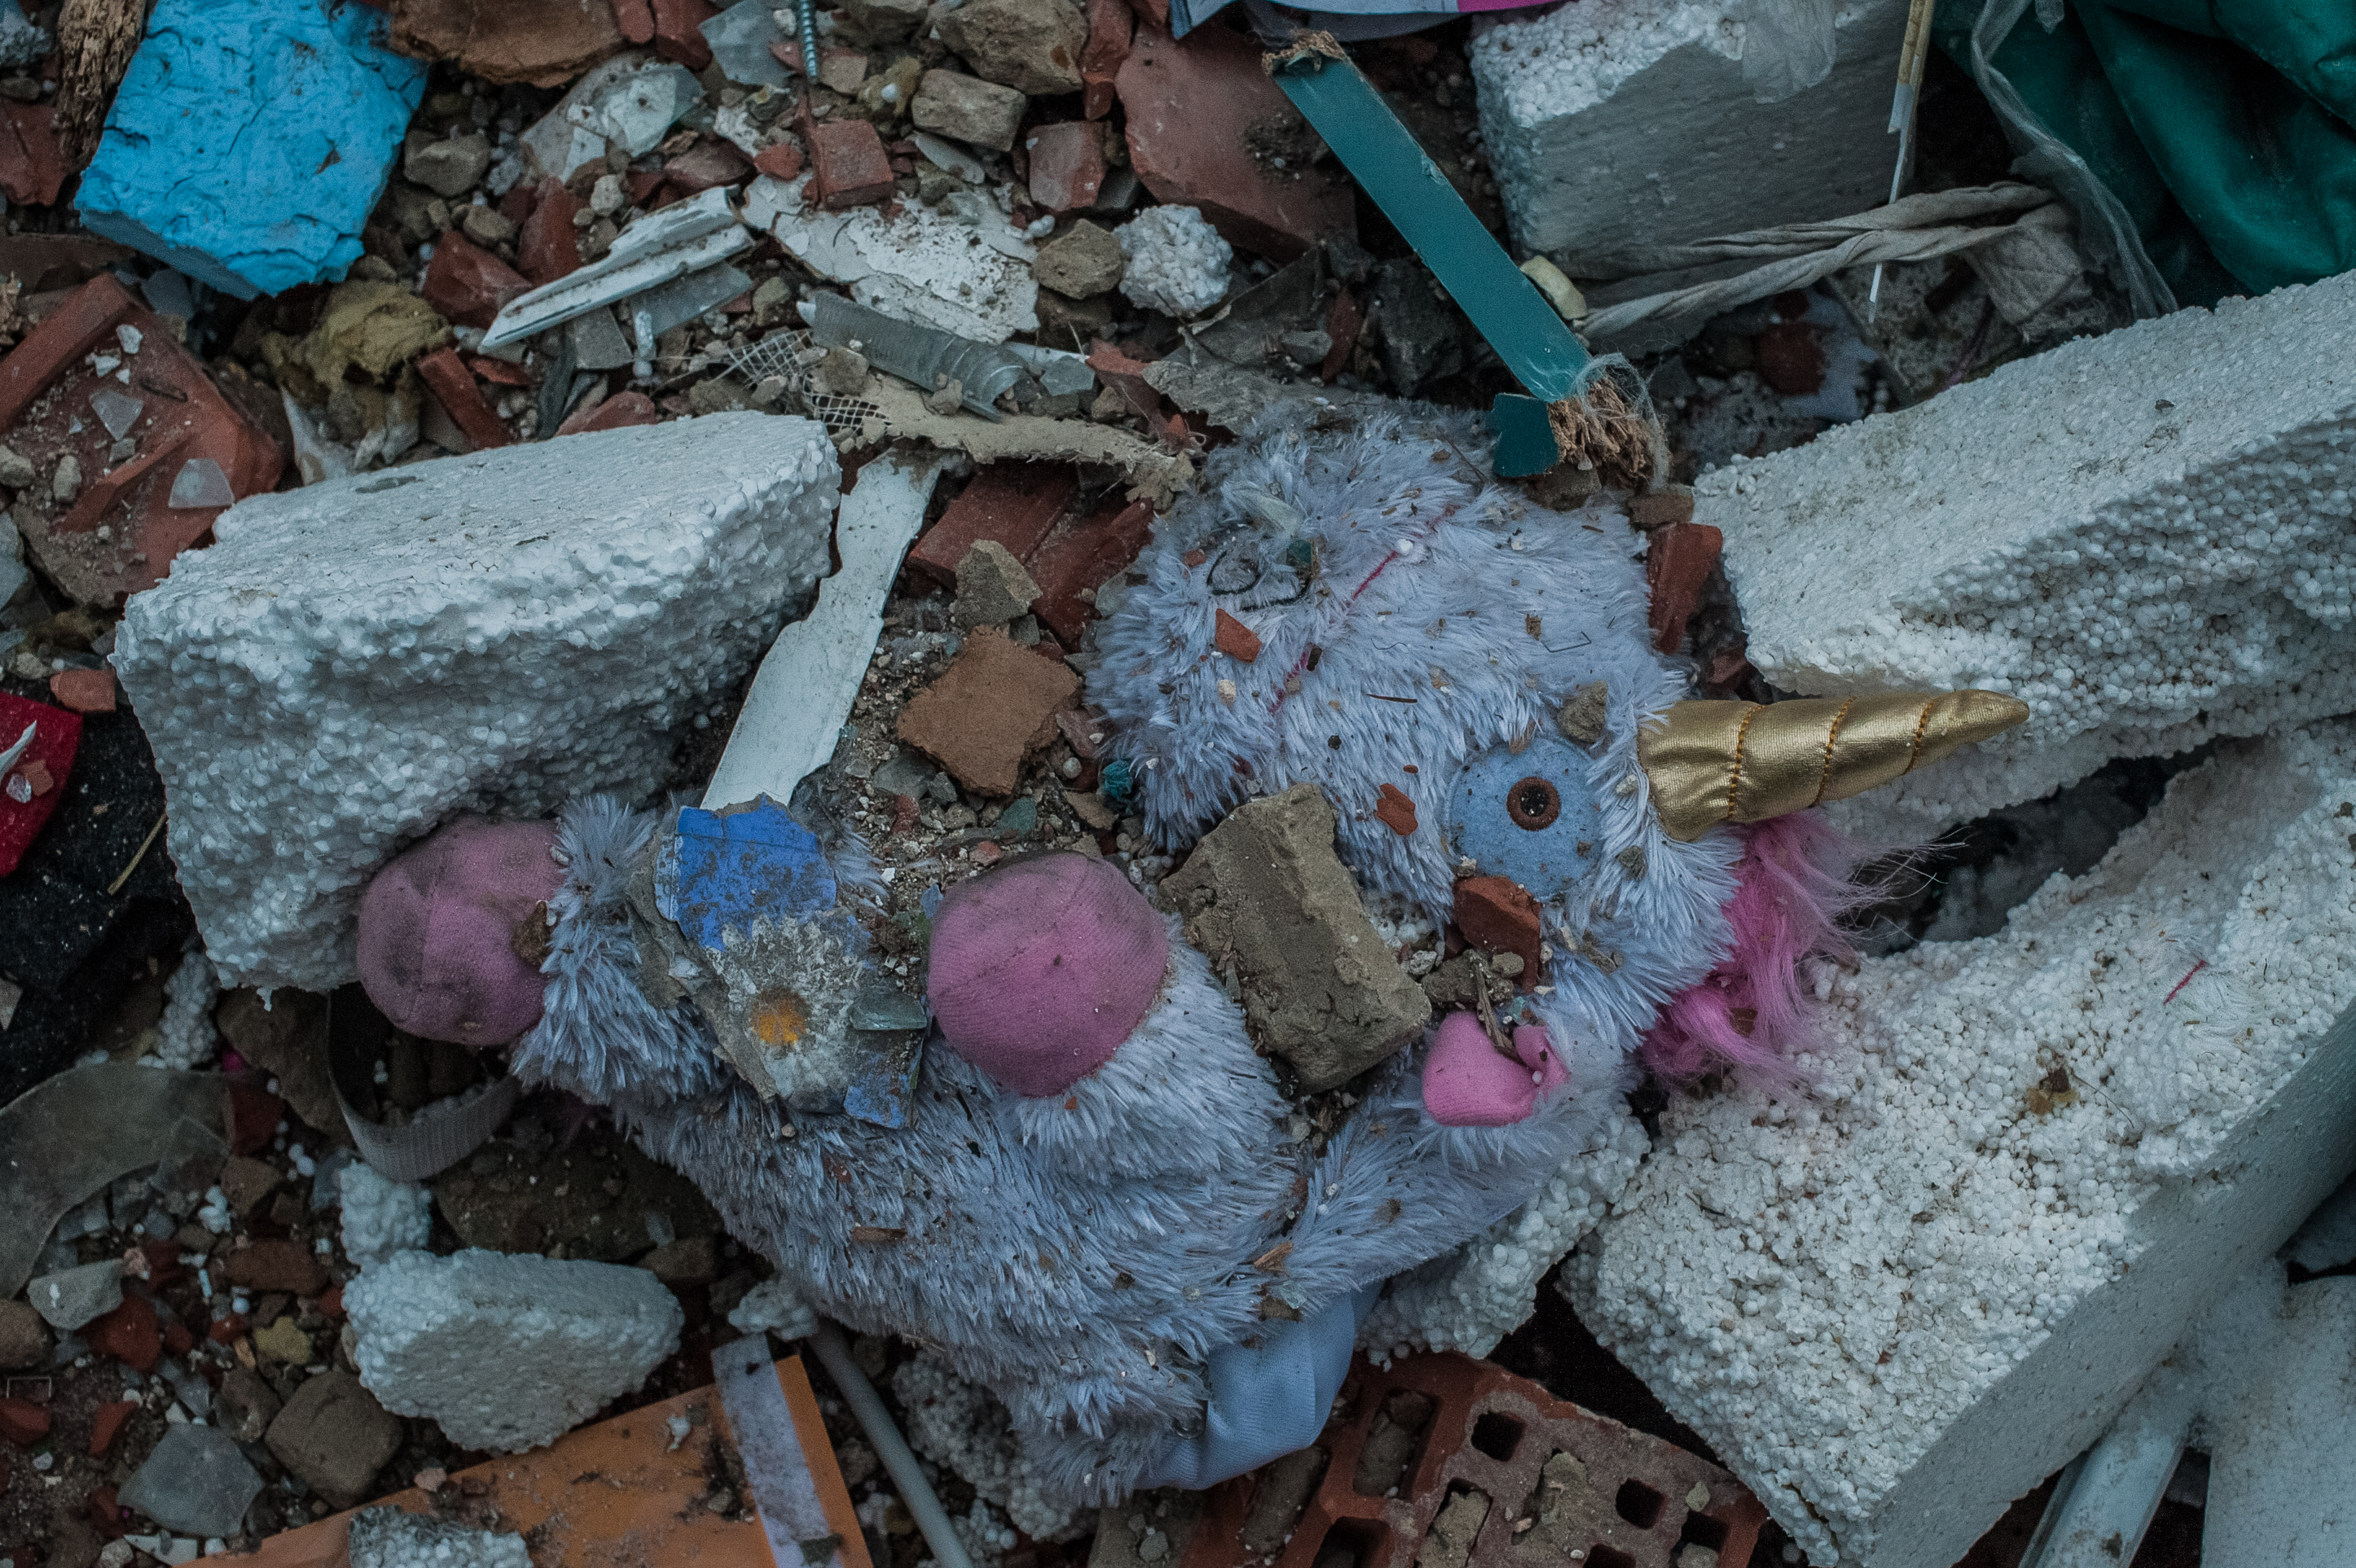 Unicorn toy in rubble